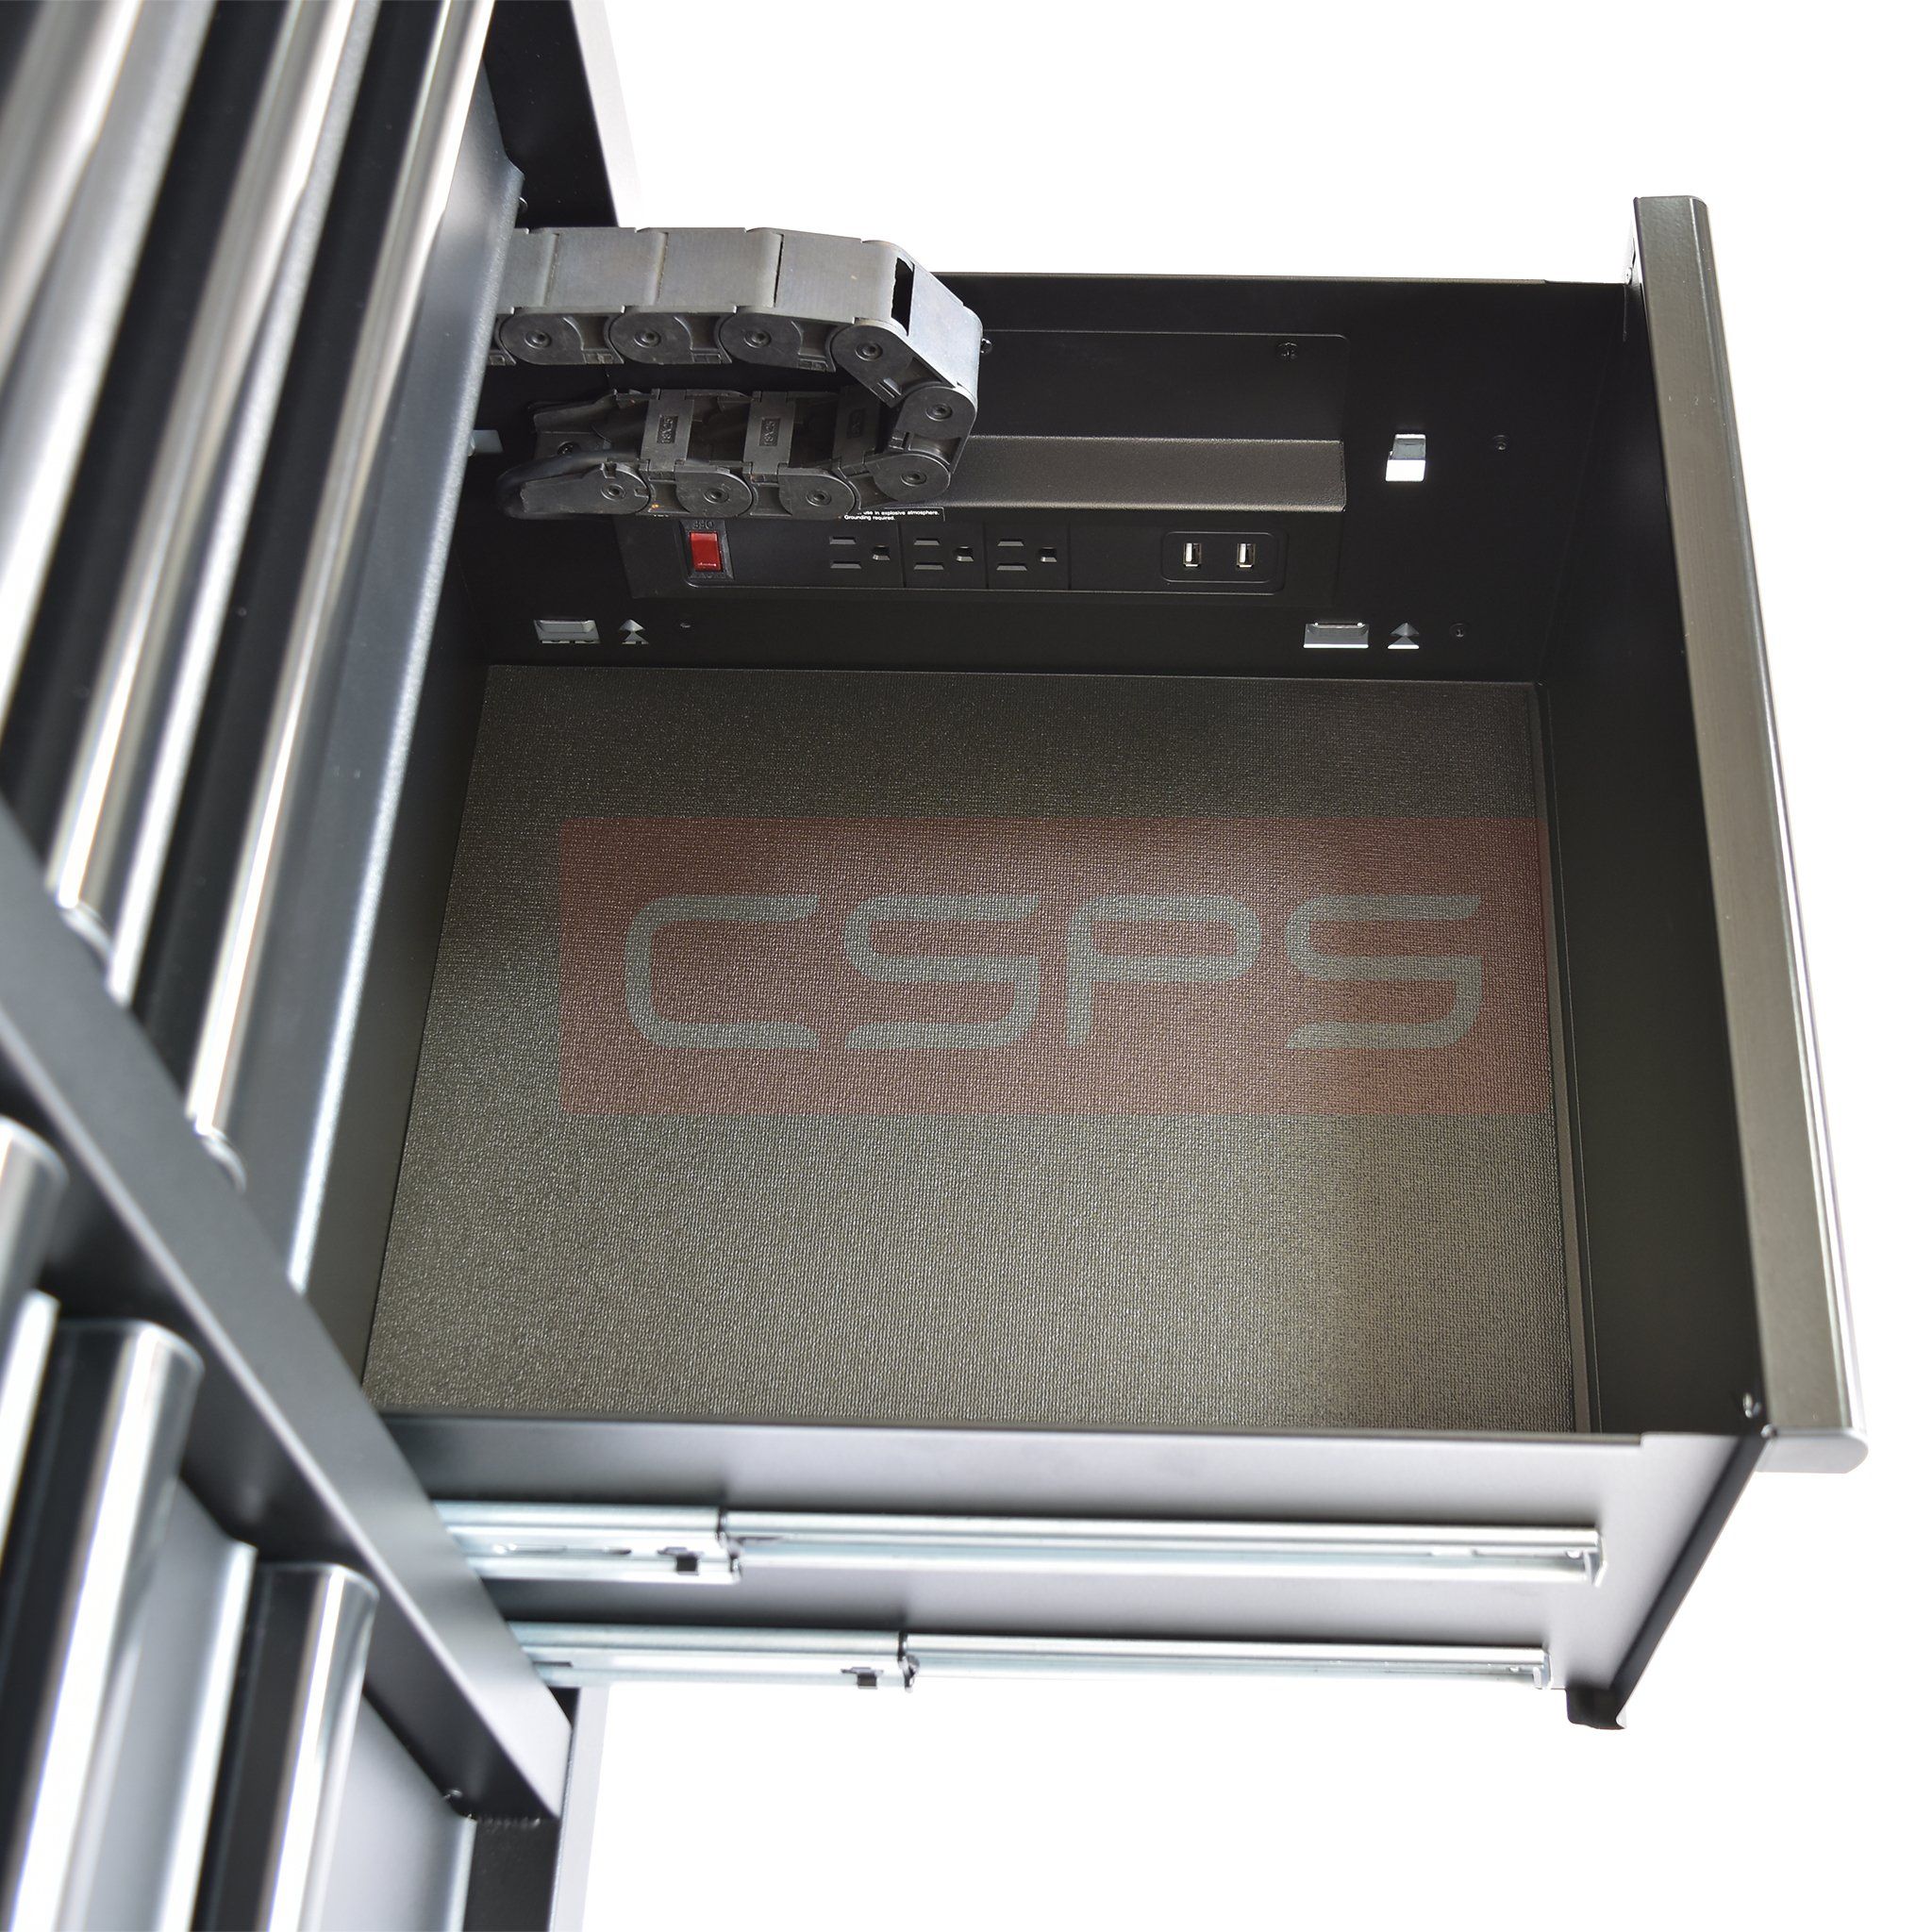  Tủ dụng cụ CSPS 132cm - 10 hộc kéo 